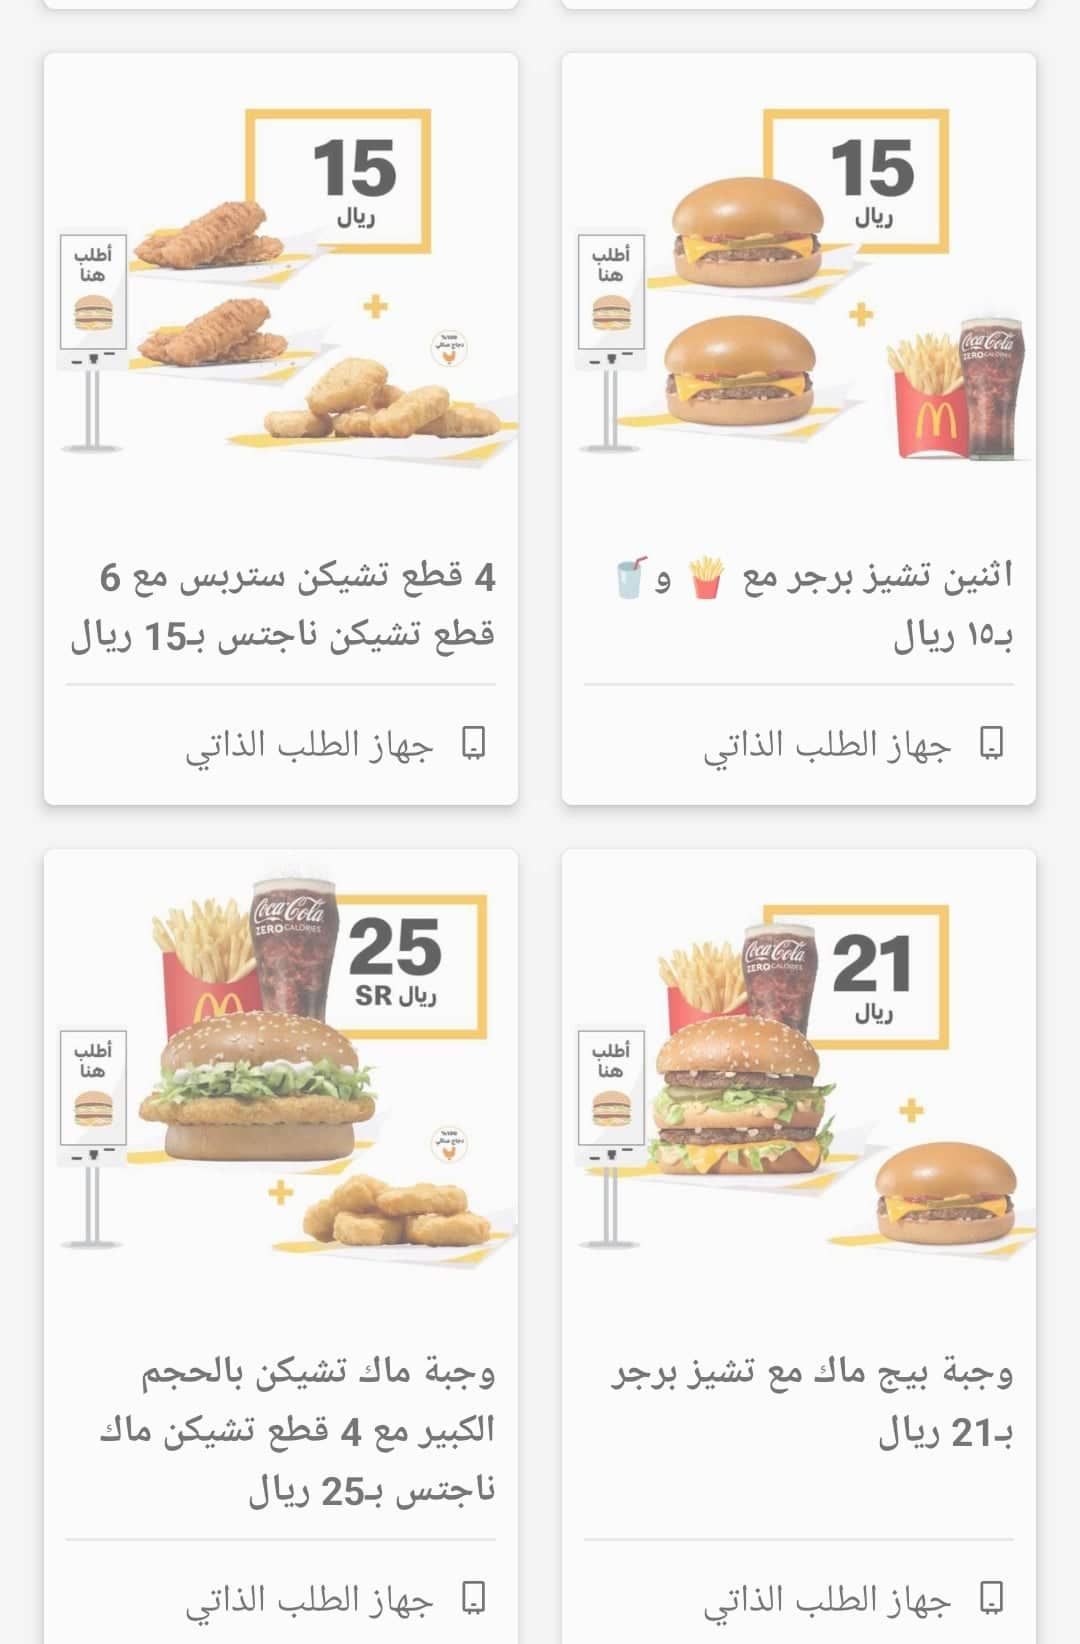 عروض ماكدونالدز لليوم الوطني وجبات McDonald's بأسعار مميزة